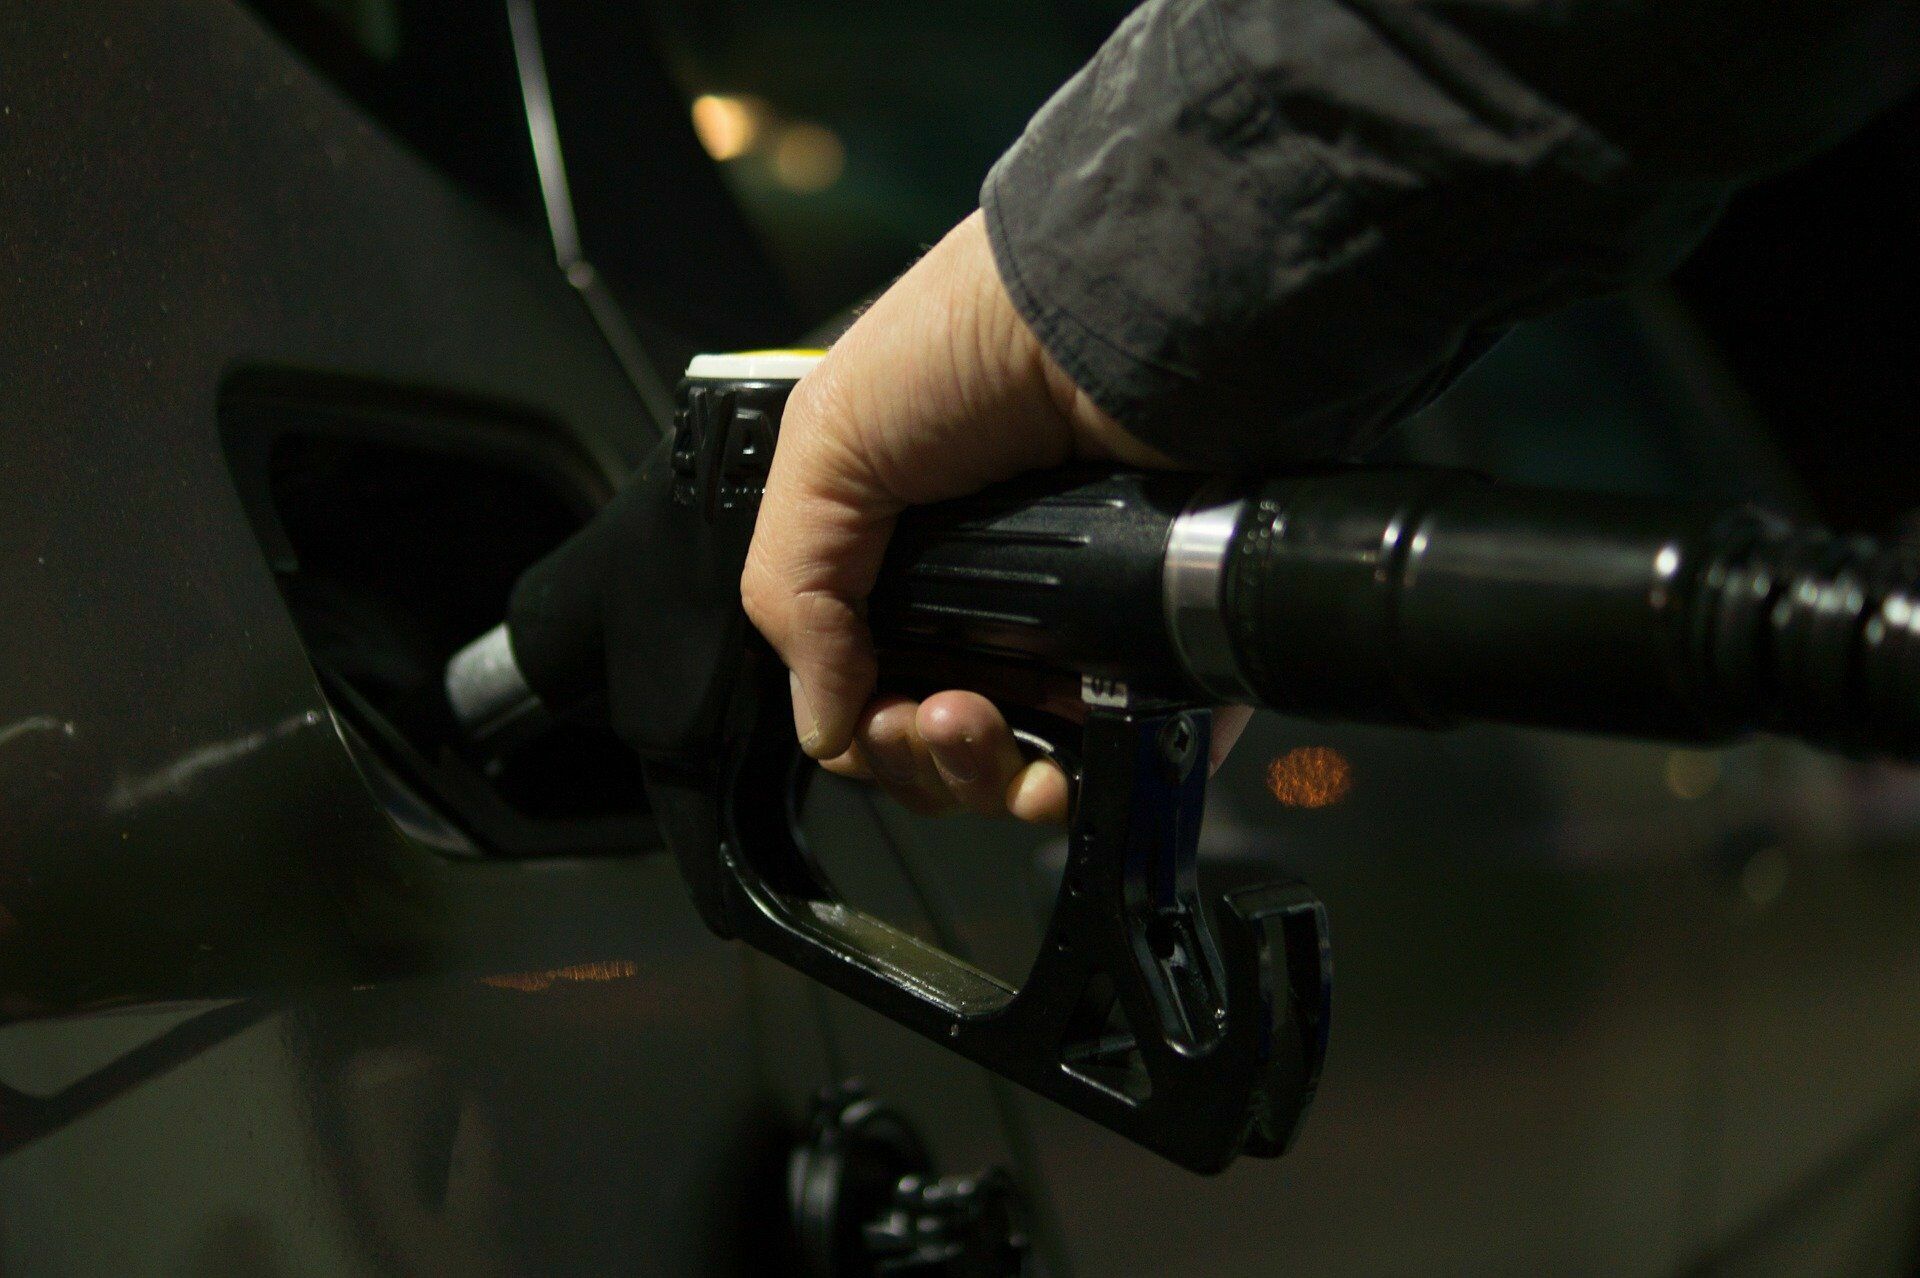 Эксперты ожидают поставок контрафакта на АЗС из-за низкого спроса на бензин